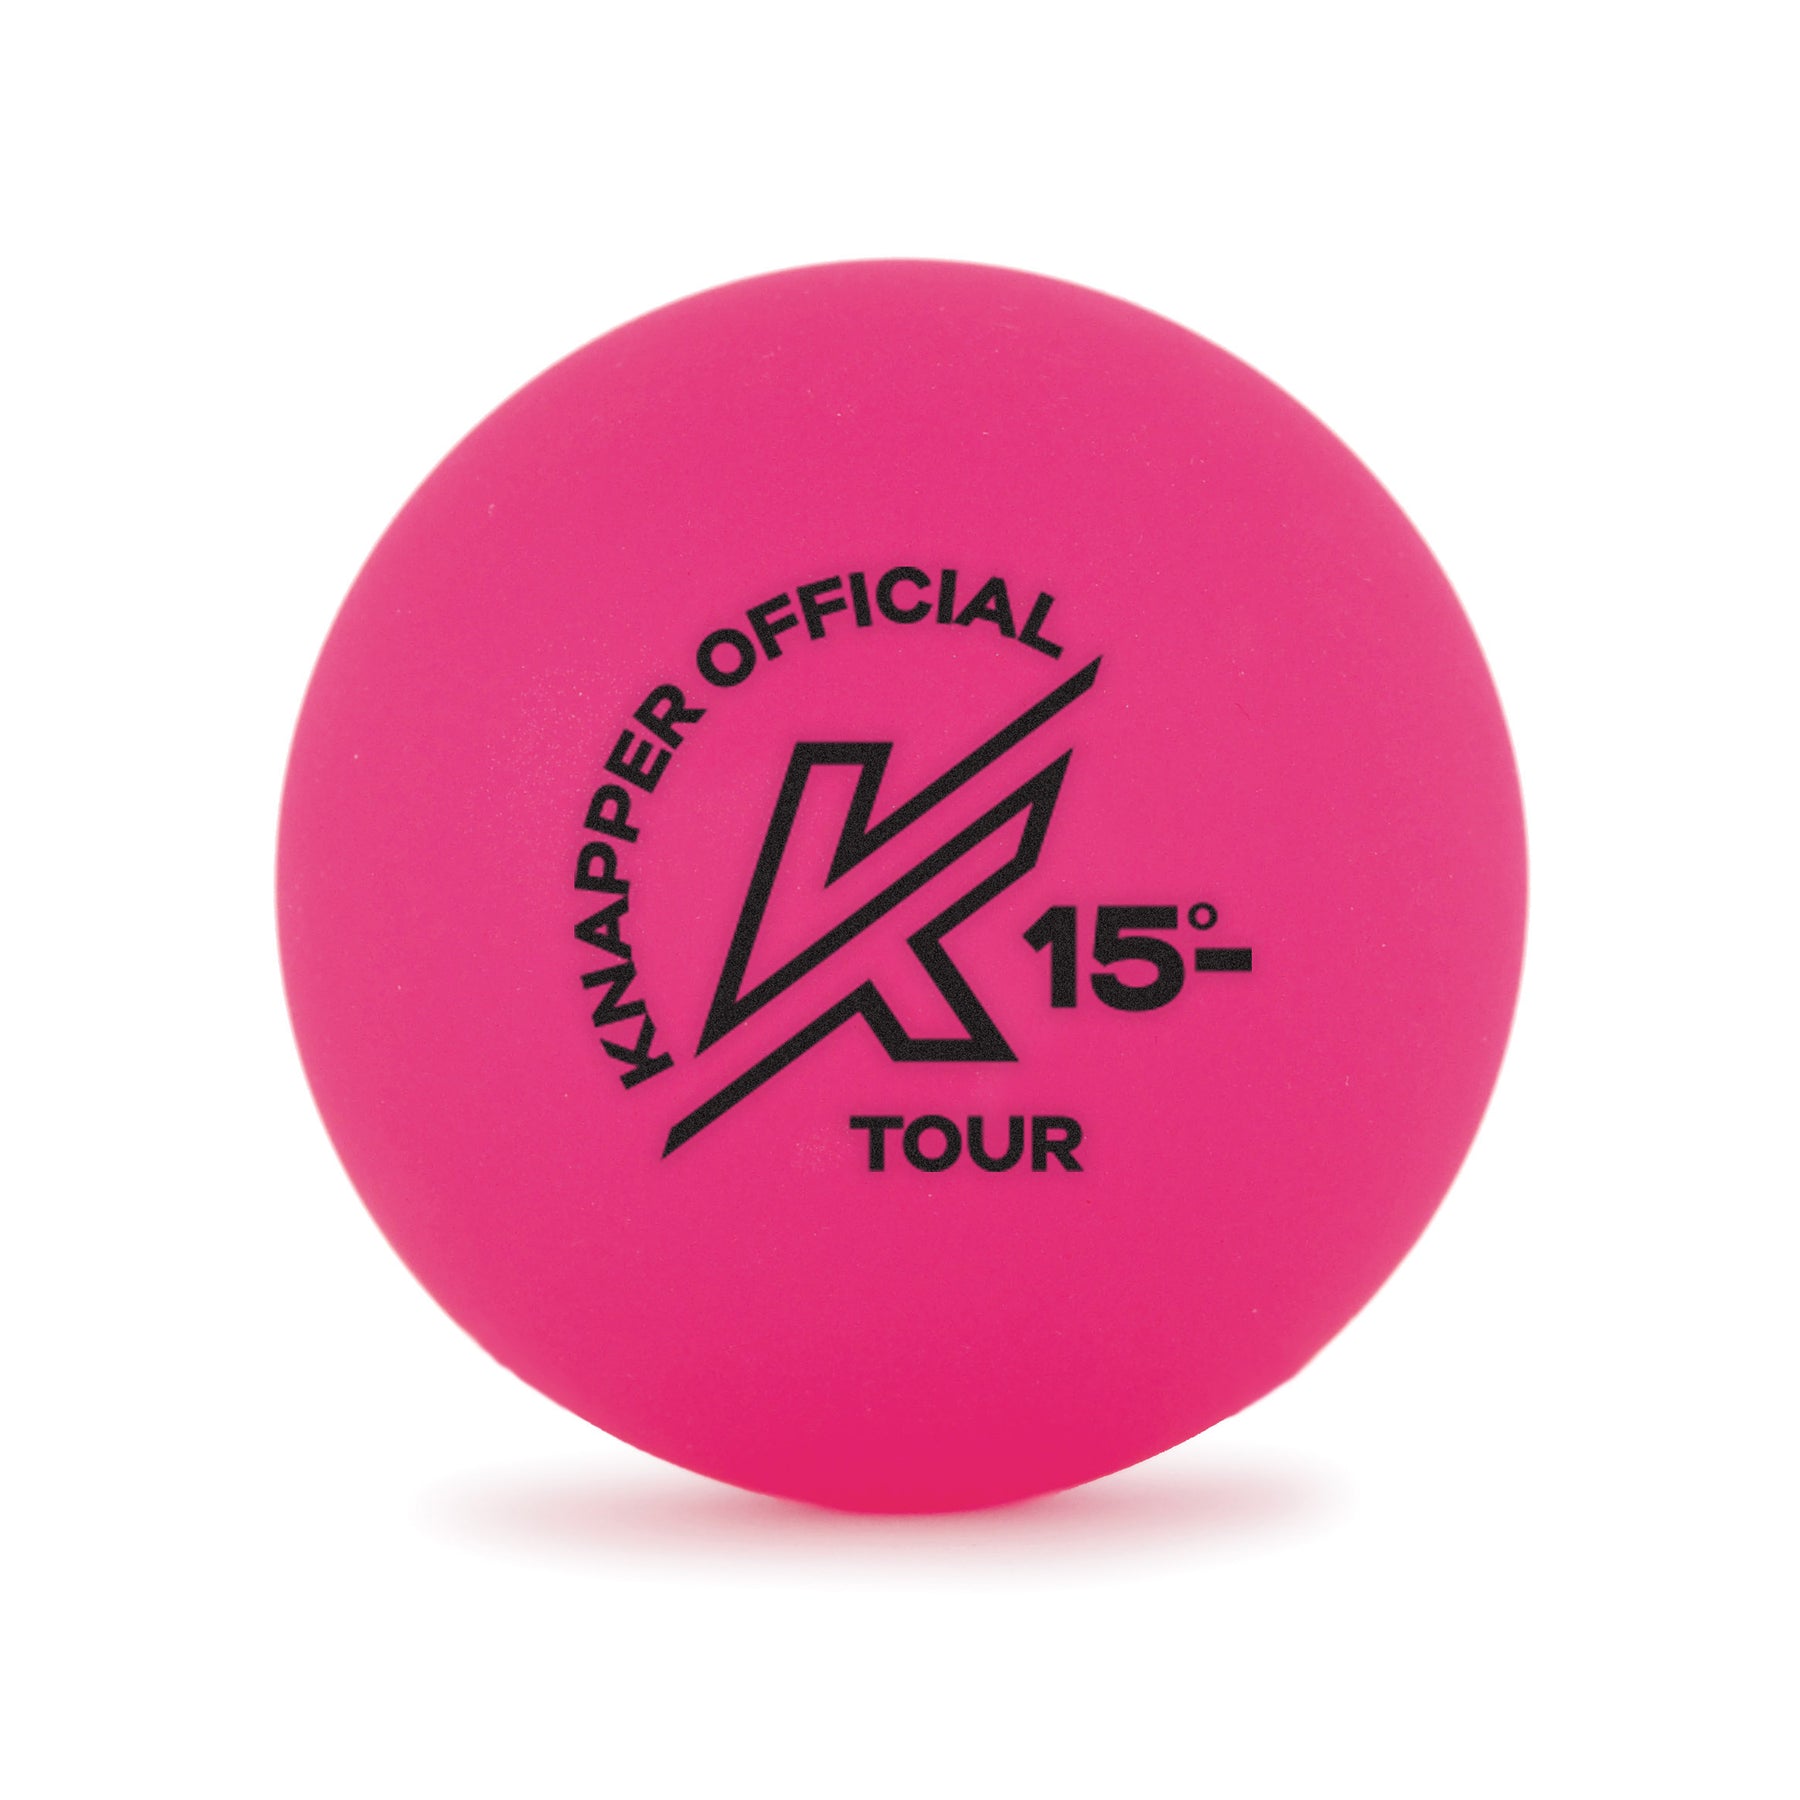 Knapper AK Tour Ball